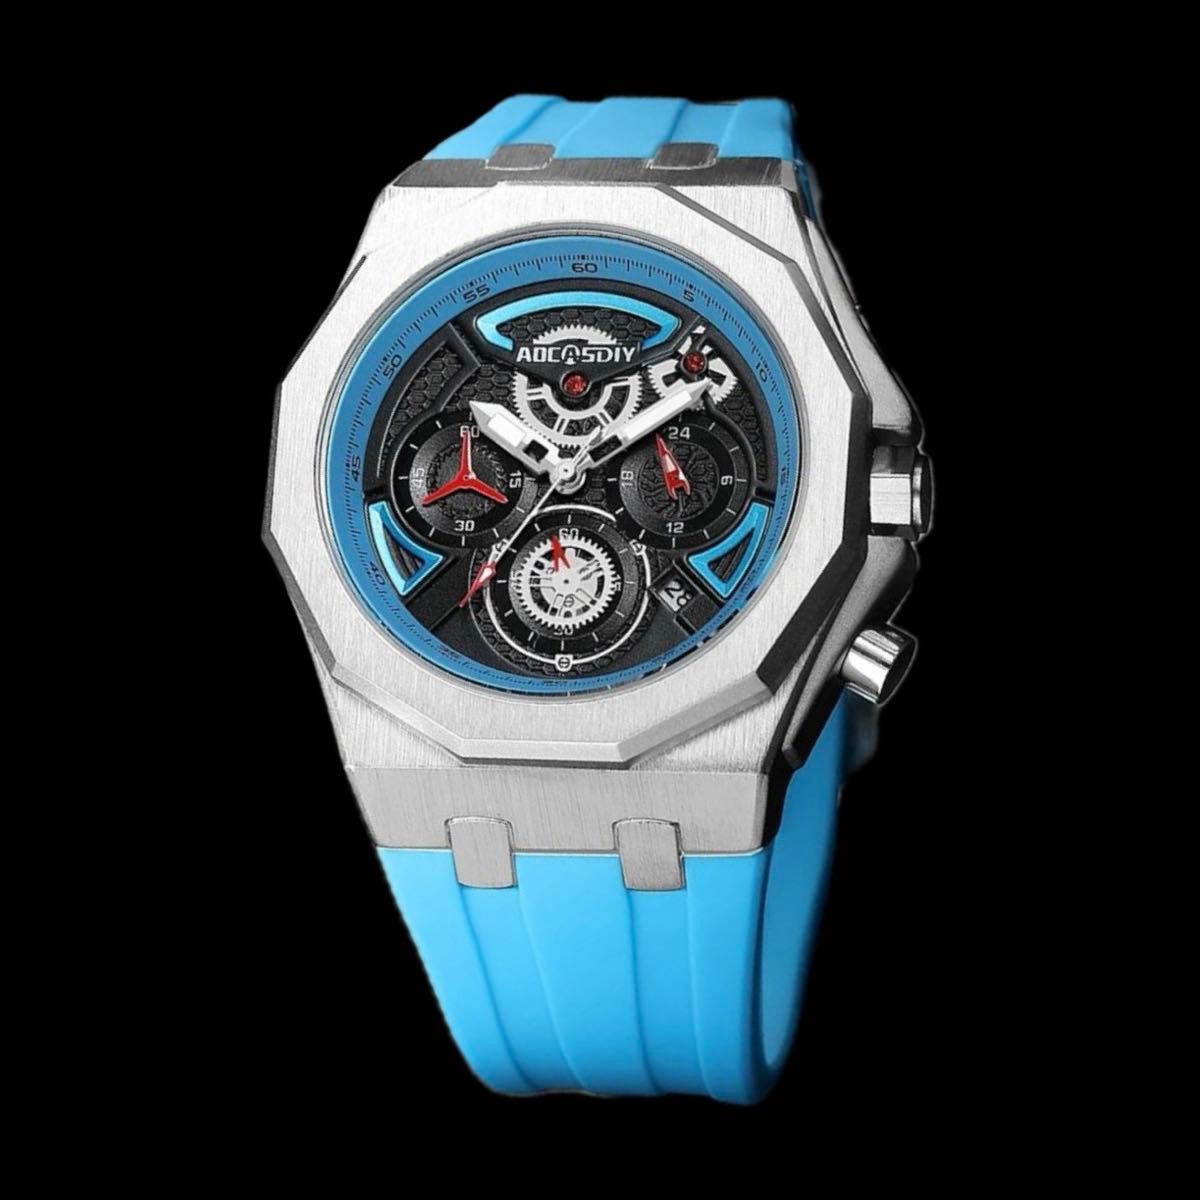 新品 AOCASDIY オマージュクロノグラフ ウォッチ ラバーストラップ メンズ腕時計 ライトブルー